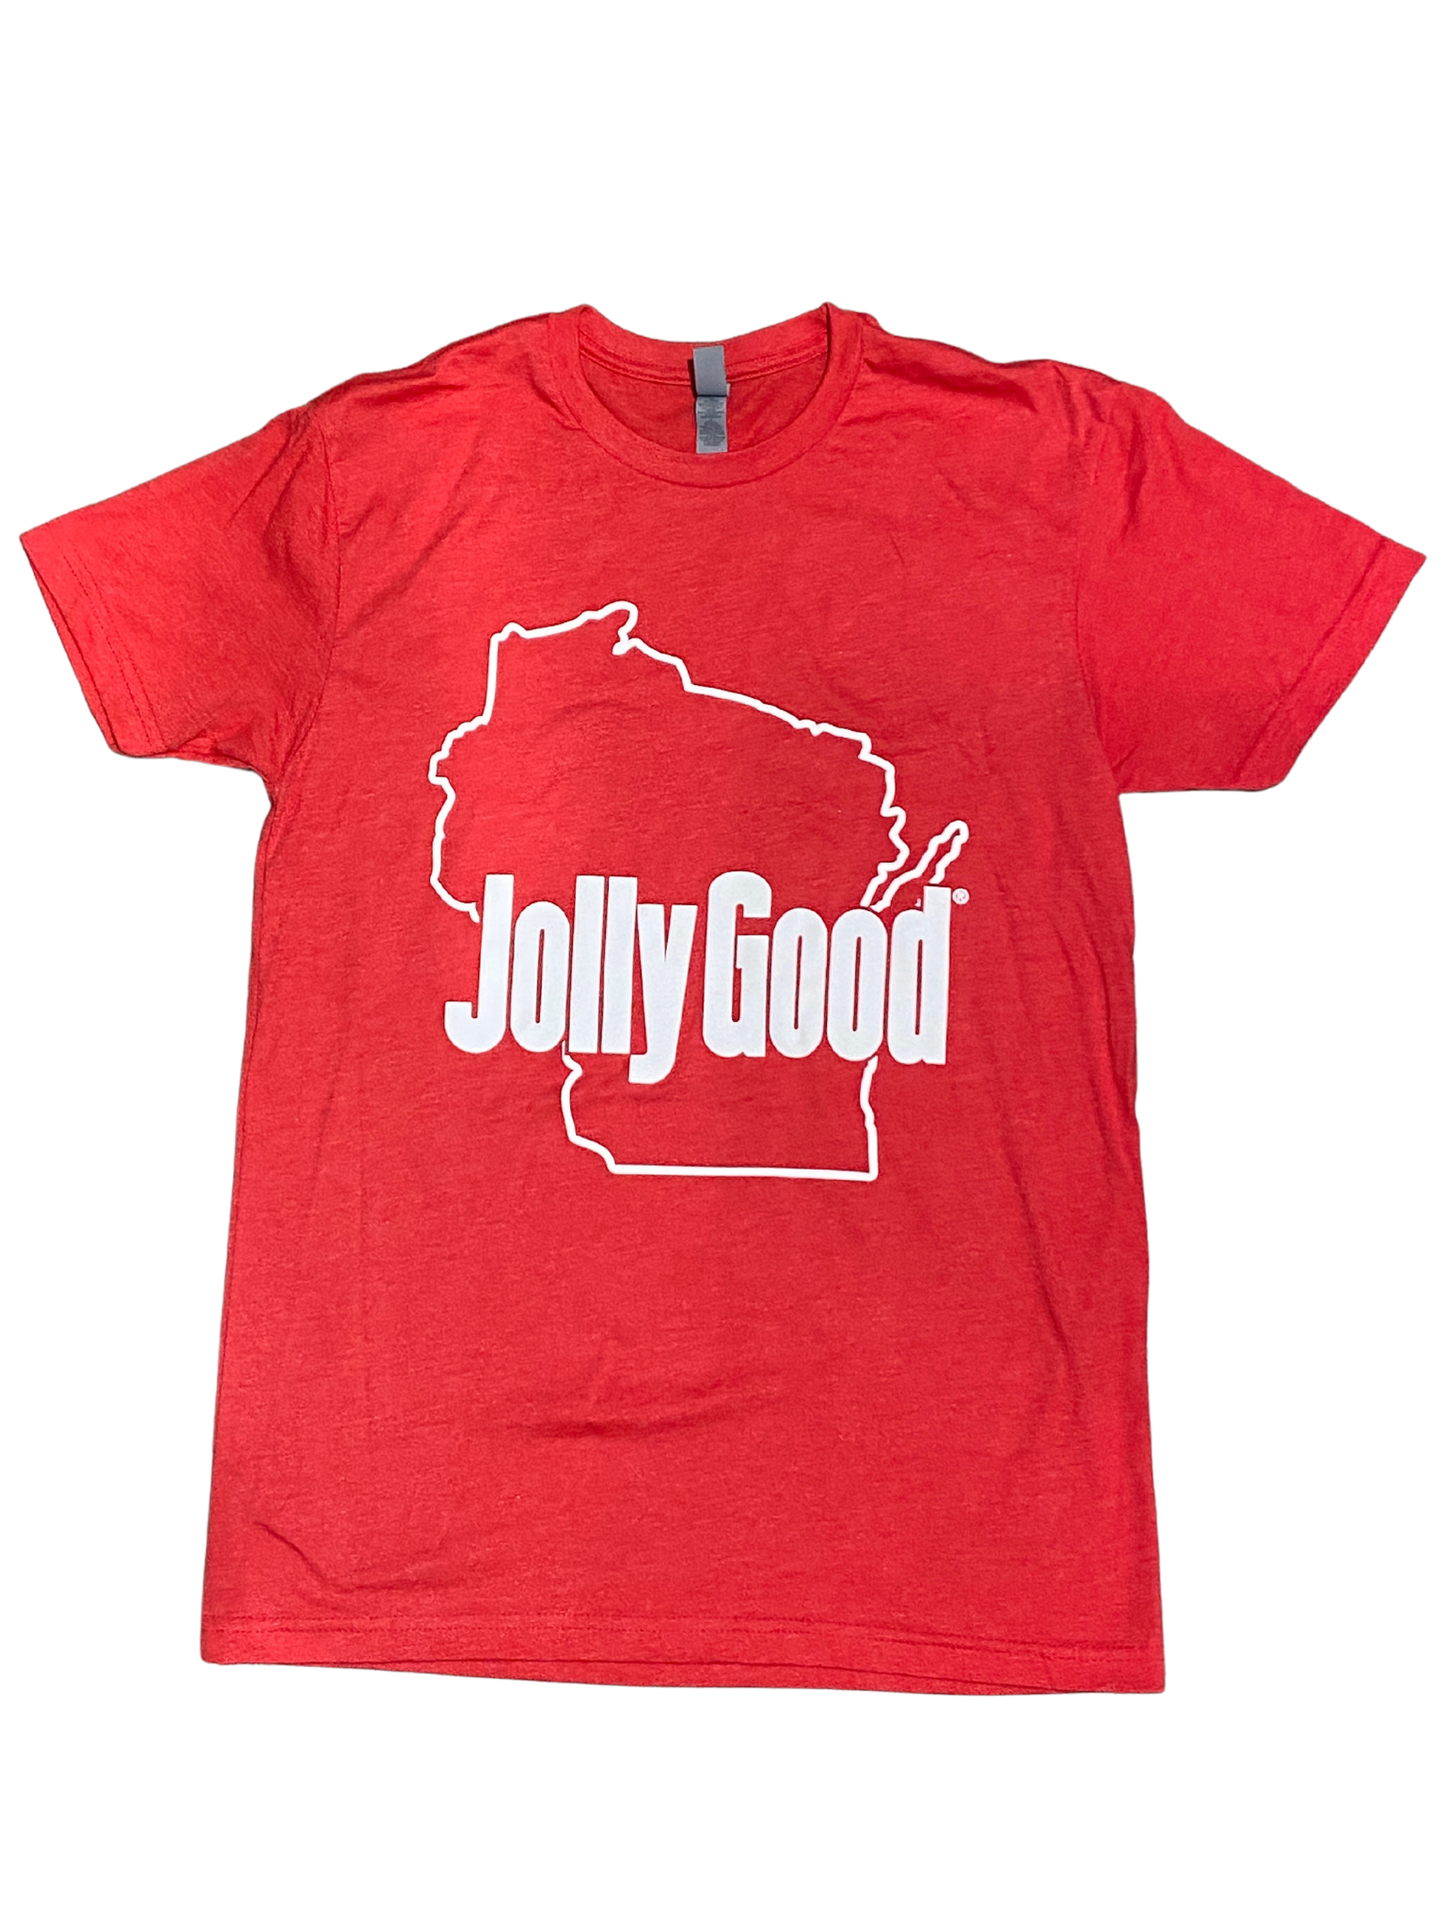 Wisconsin Jolly Good T-Shirt